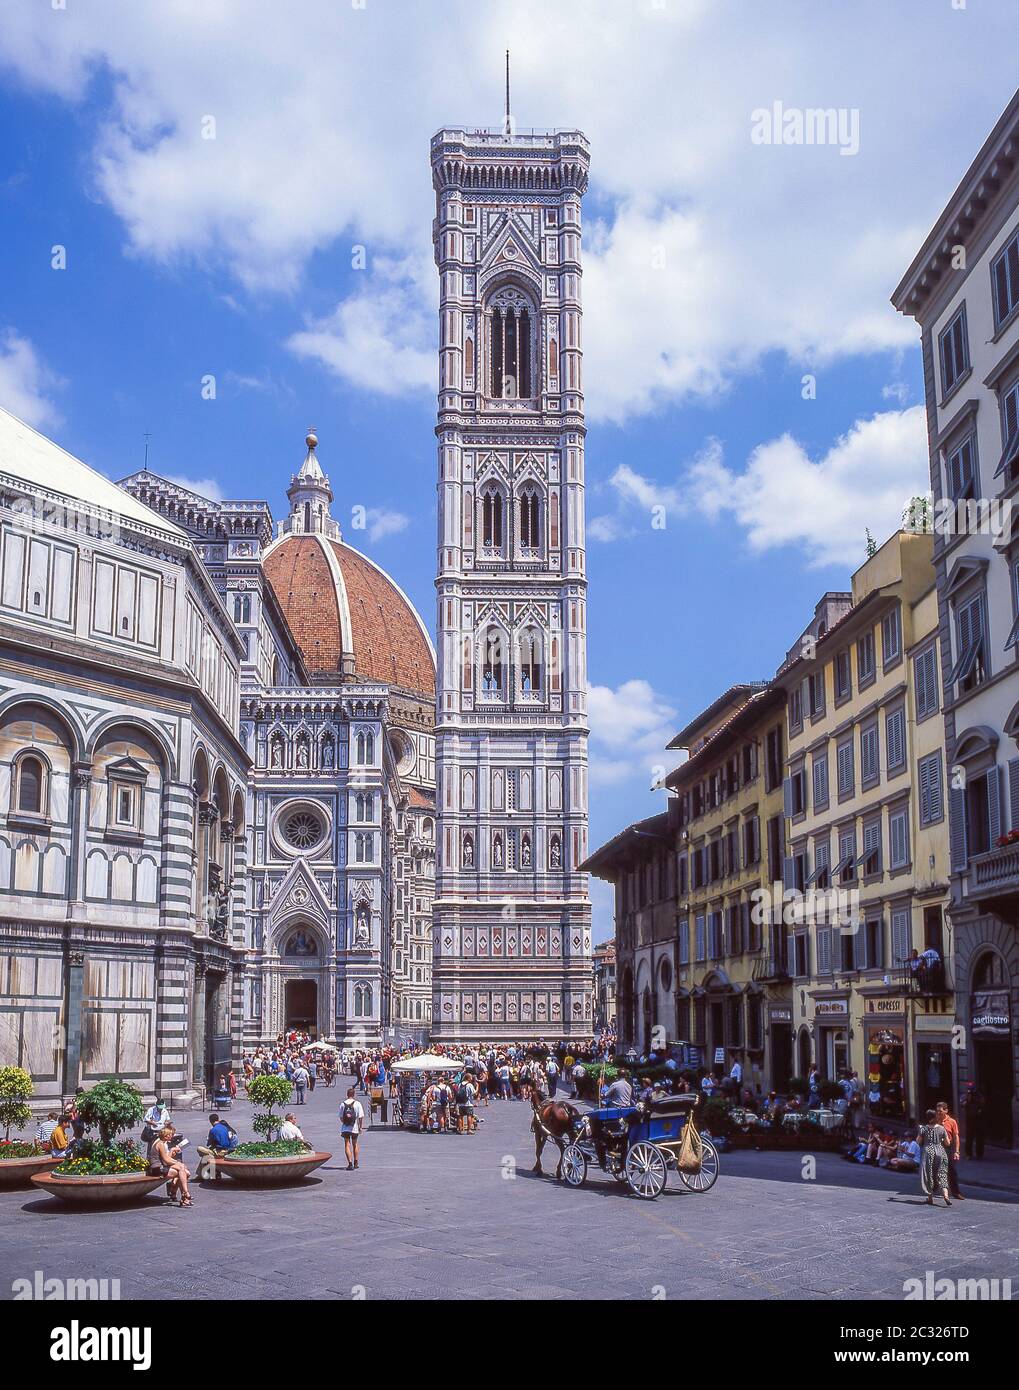 Torre de la Campana de Giotto (Campanile), Catedral de Santa María del Fiore (Duomo), Piazza del Duomo, Florencia (Florencia), región de la Toscana, Italia Foto de stock